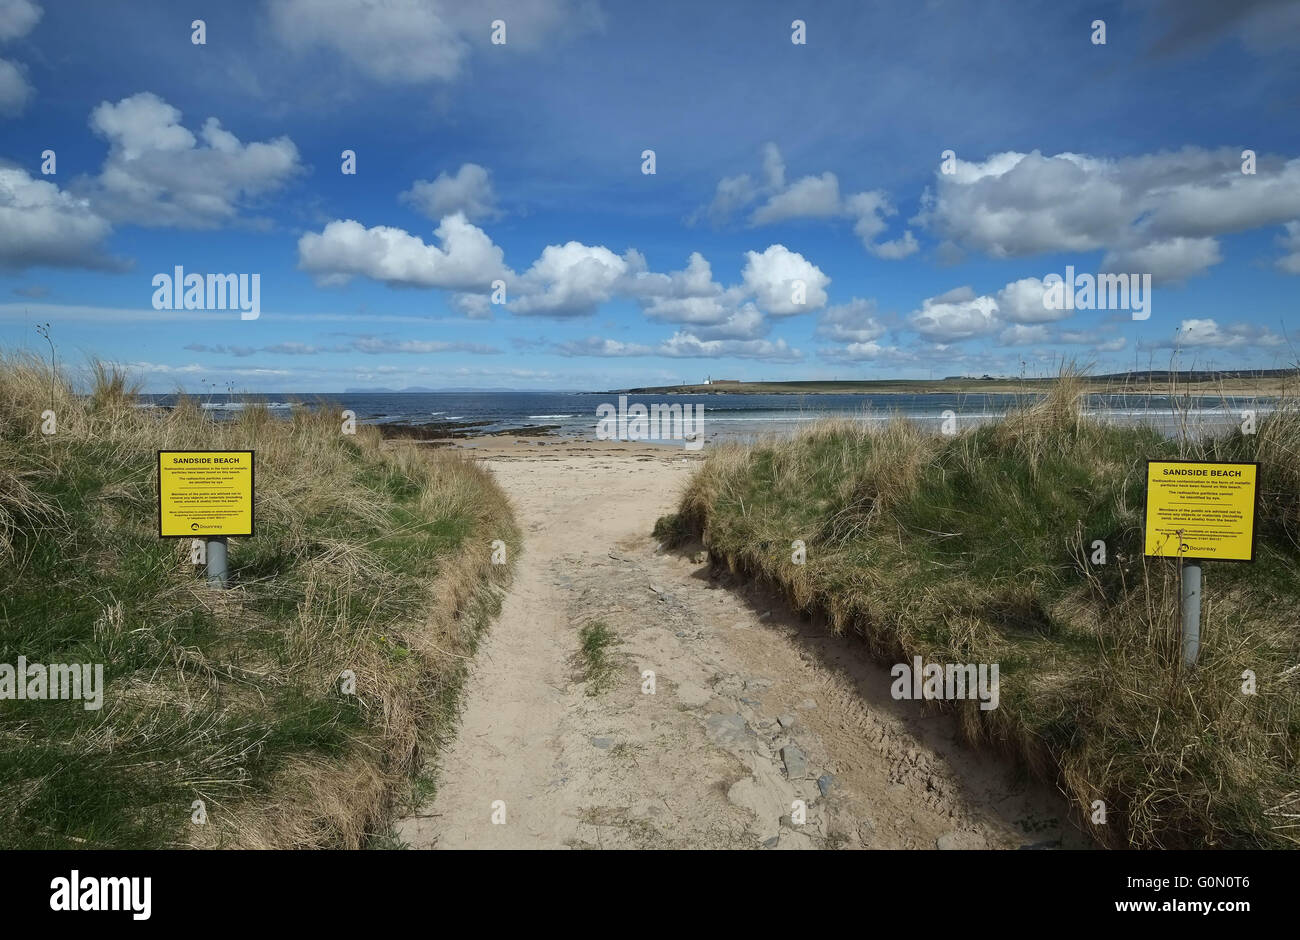 20.04.2016, Warnung Zeichen der radioaktiven Belastung in Form von metallischen Partikel am Sandside Strand, Reay, Caithness, UK Stockfoto